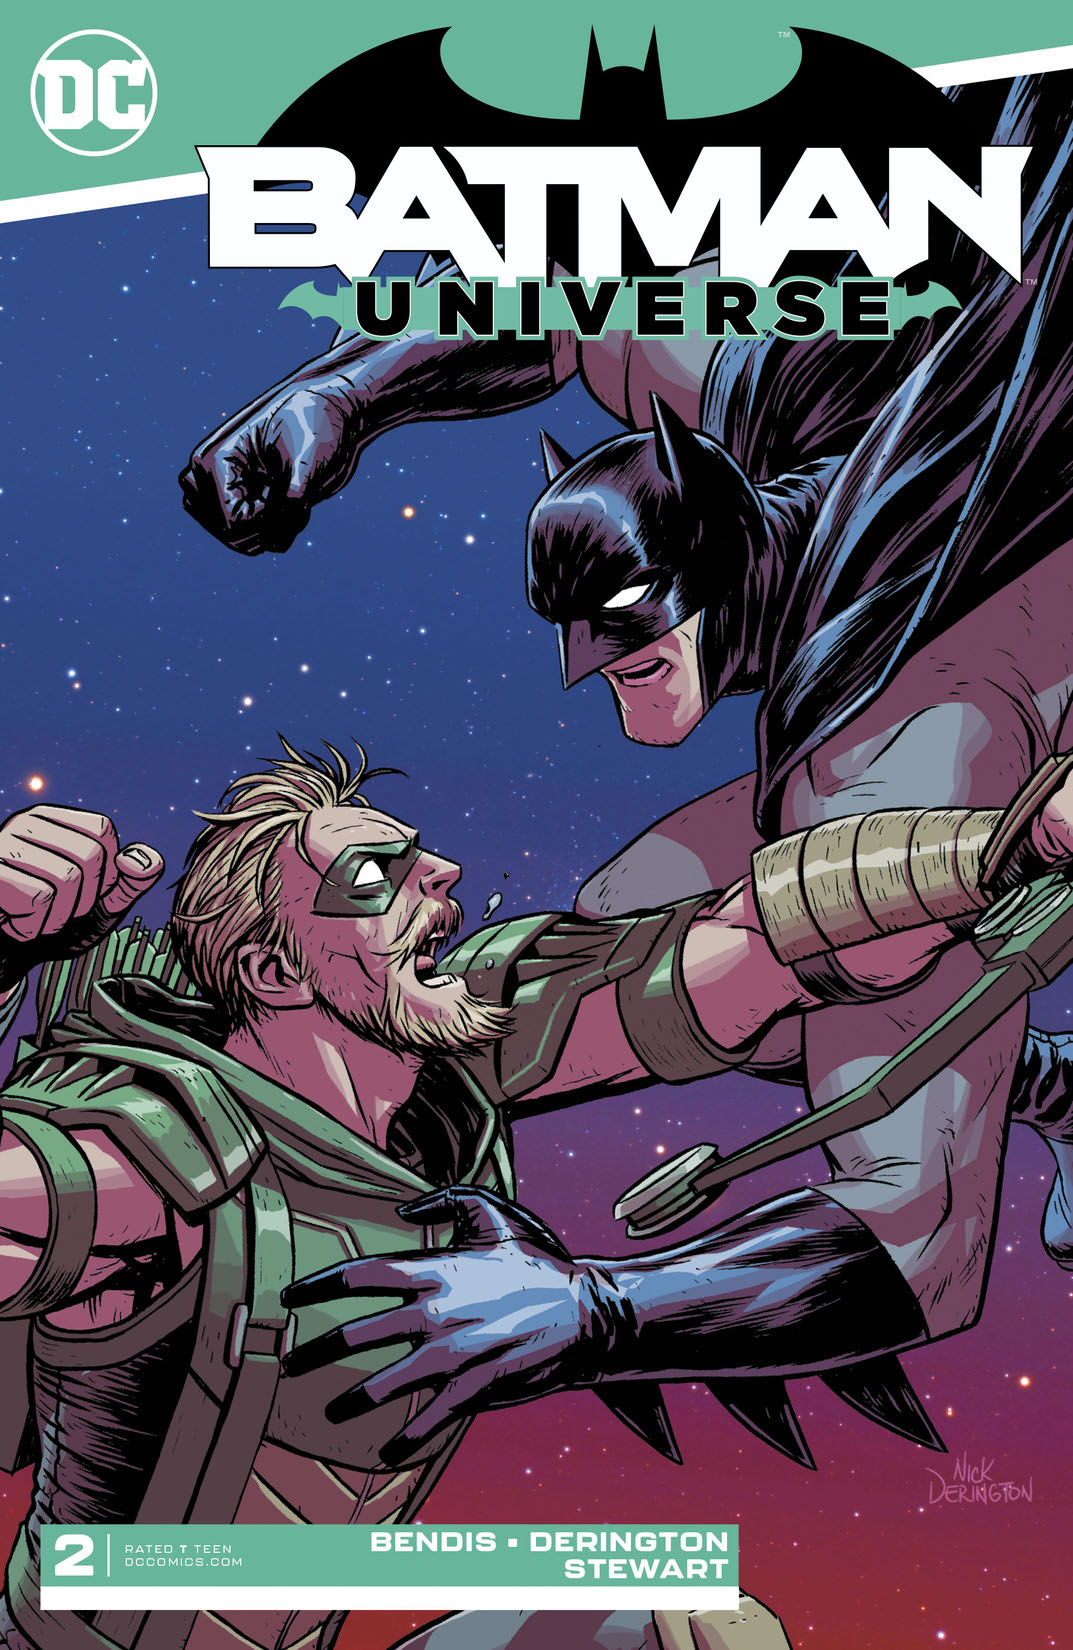 Batman: Universe #2 preview images